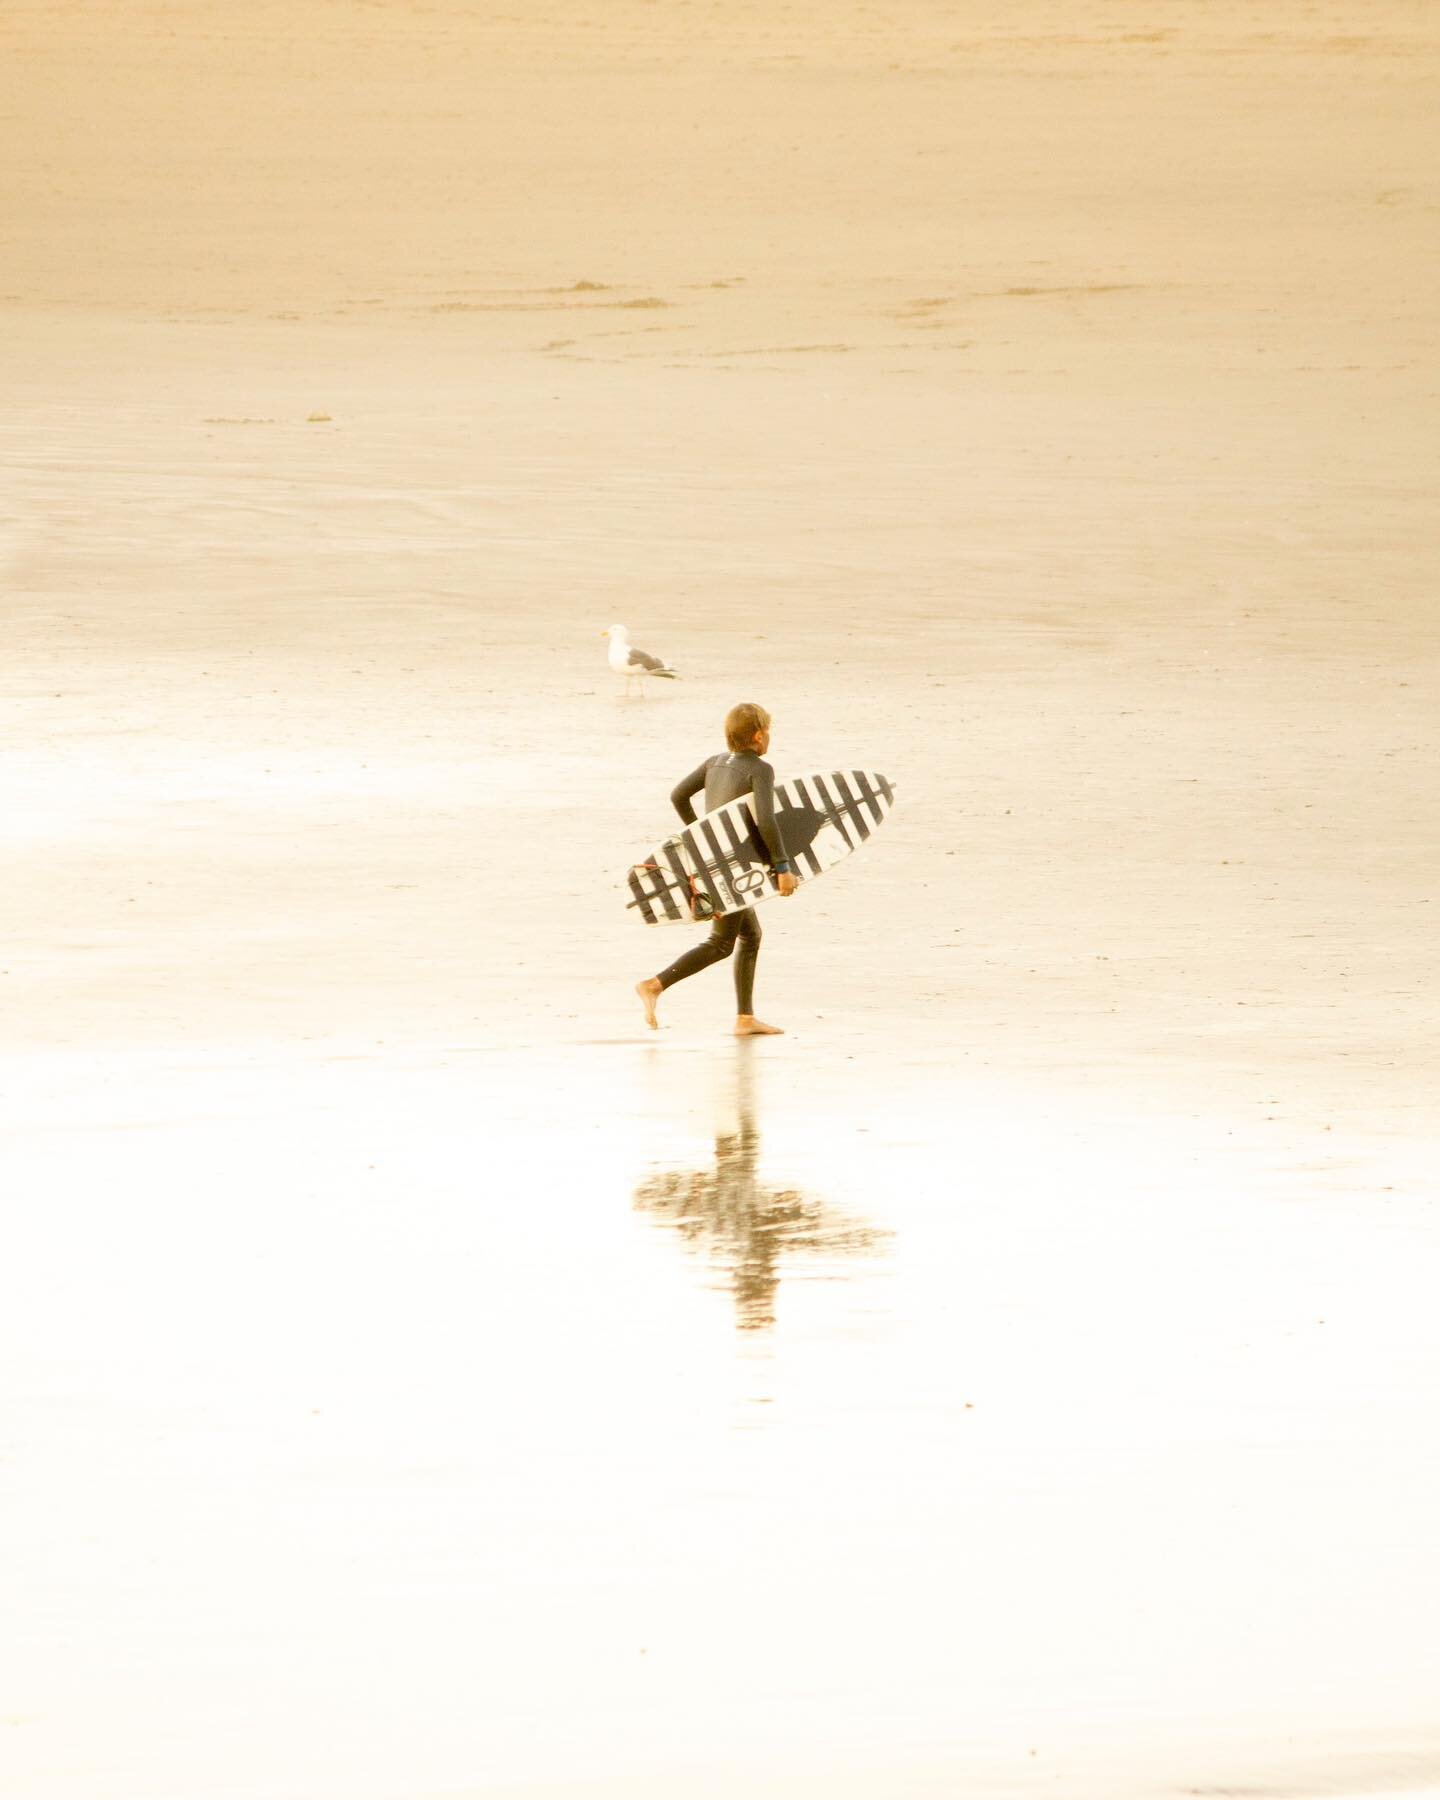 Peaceful sunset moment.
➖
#surf #surfer #visitslo #morrobay #minimalism